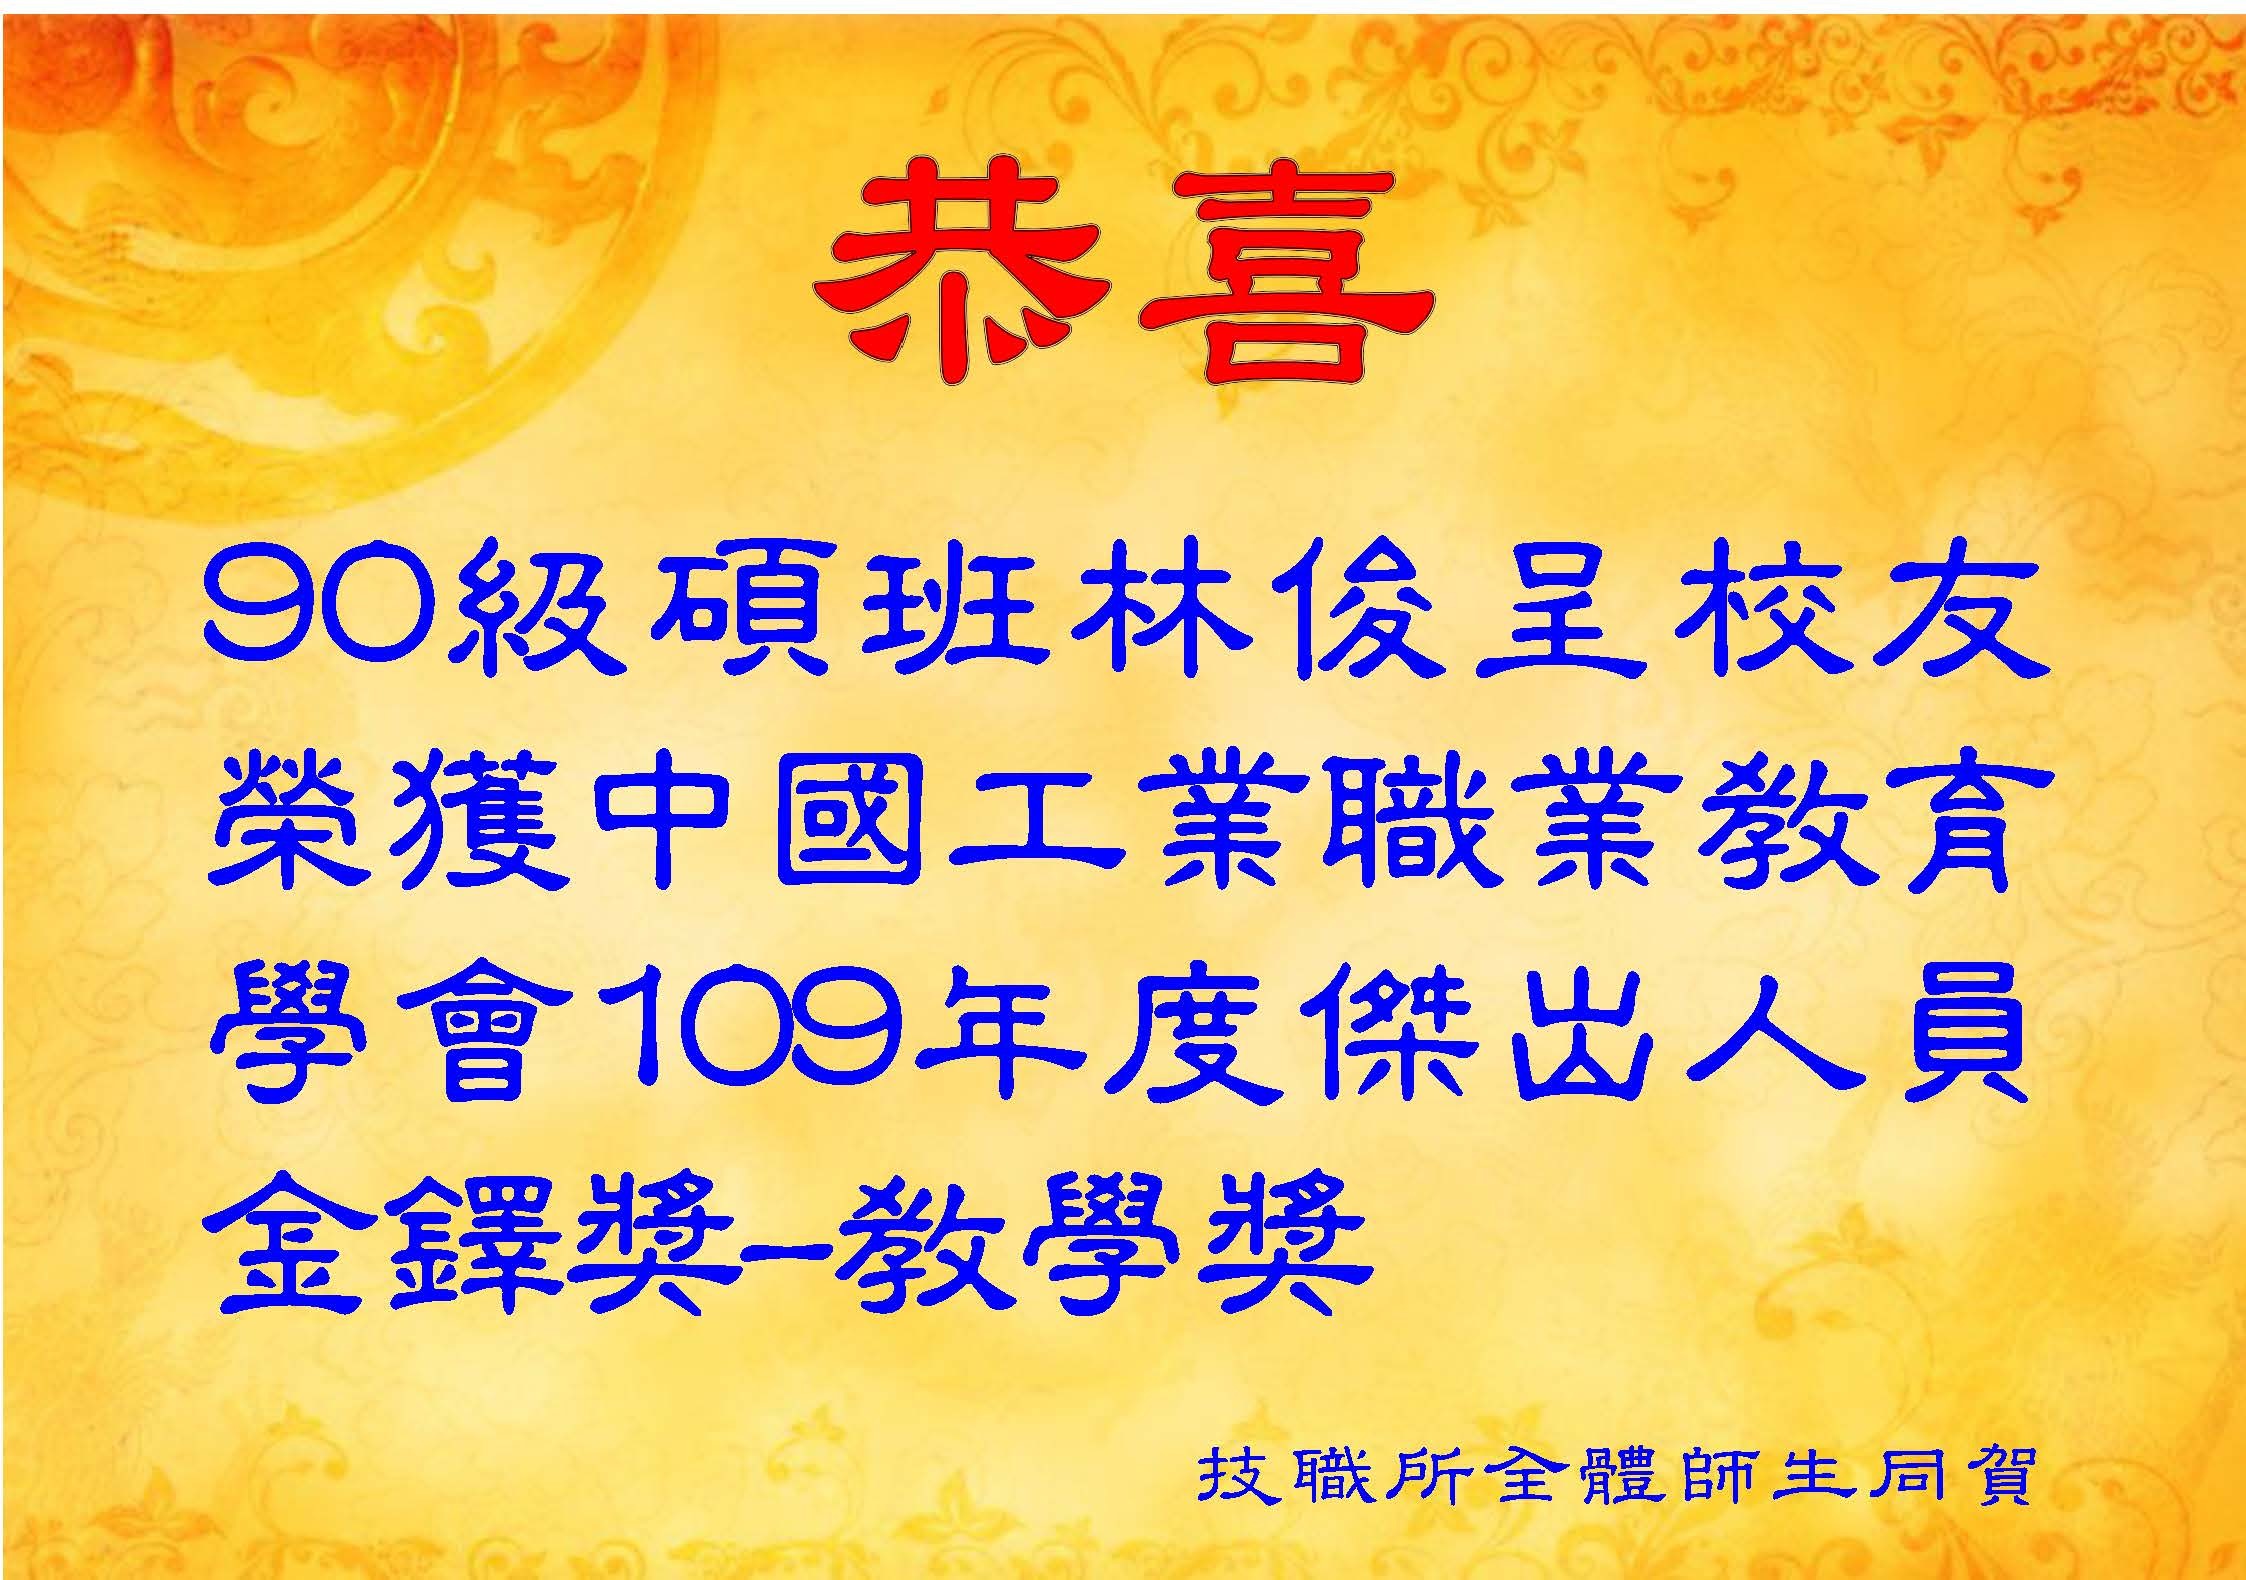 90級碩班林俊呈校友榮獲中國工業職業教育學會109年度傑出人員金鐸獎-教學獎